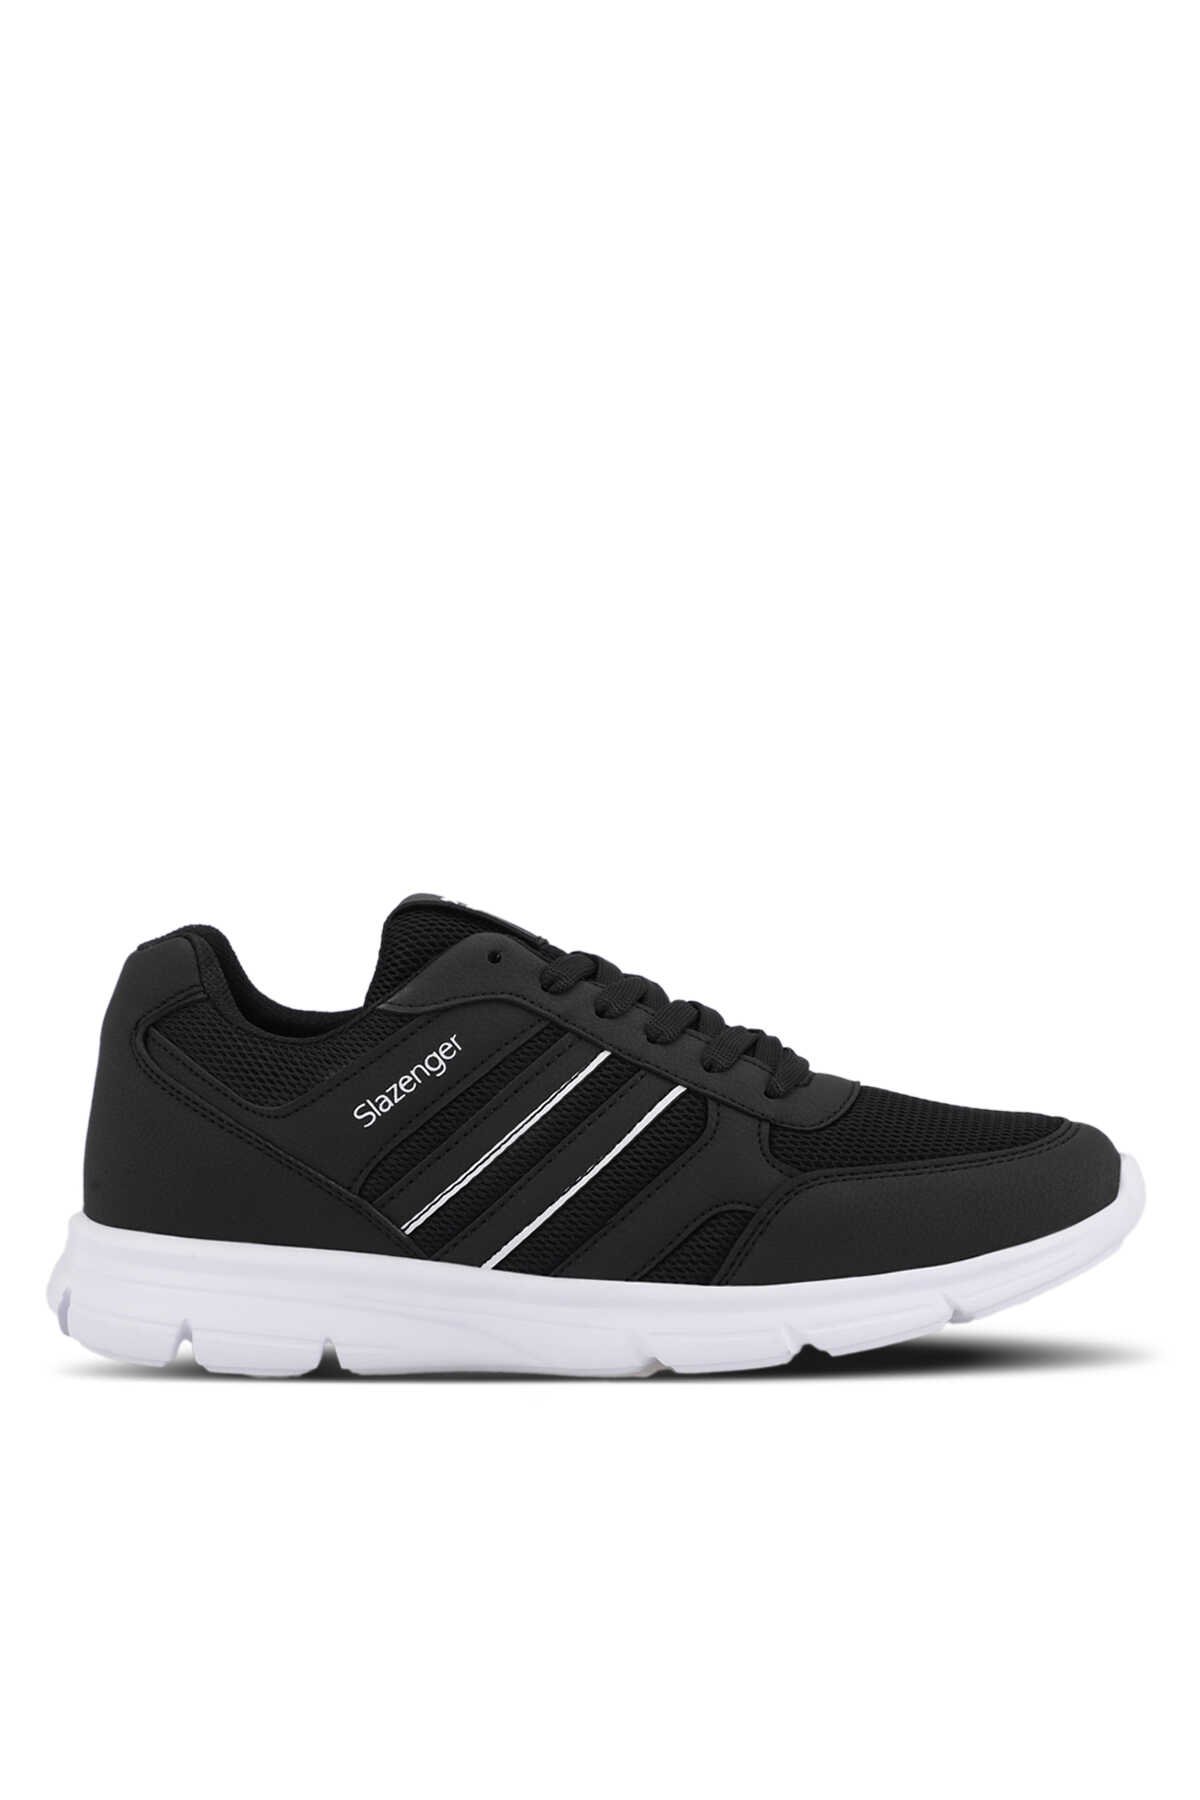 Slazenger - Slazenger EFRAT I Sneaker Erkek Ayakkabı Siyah / Beyaz